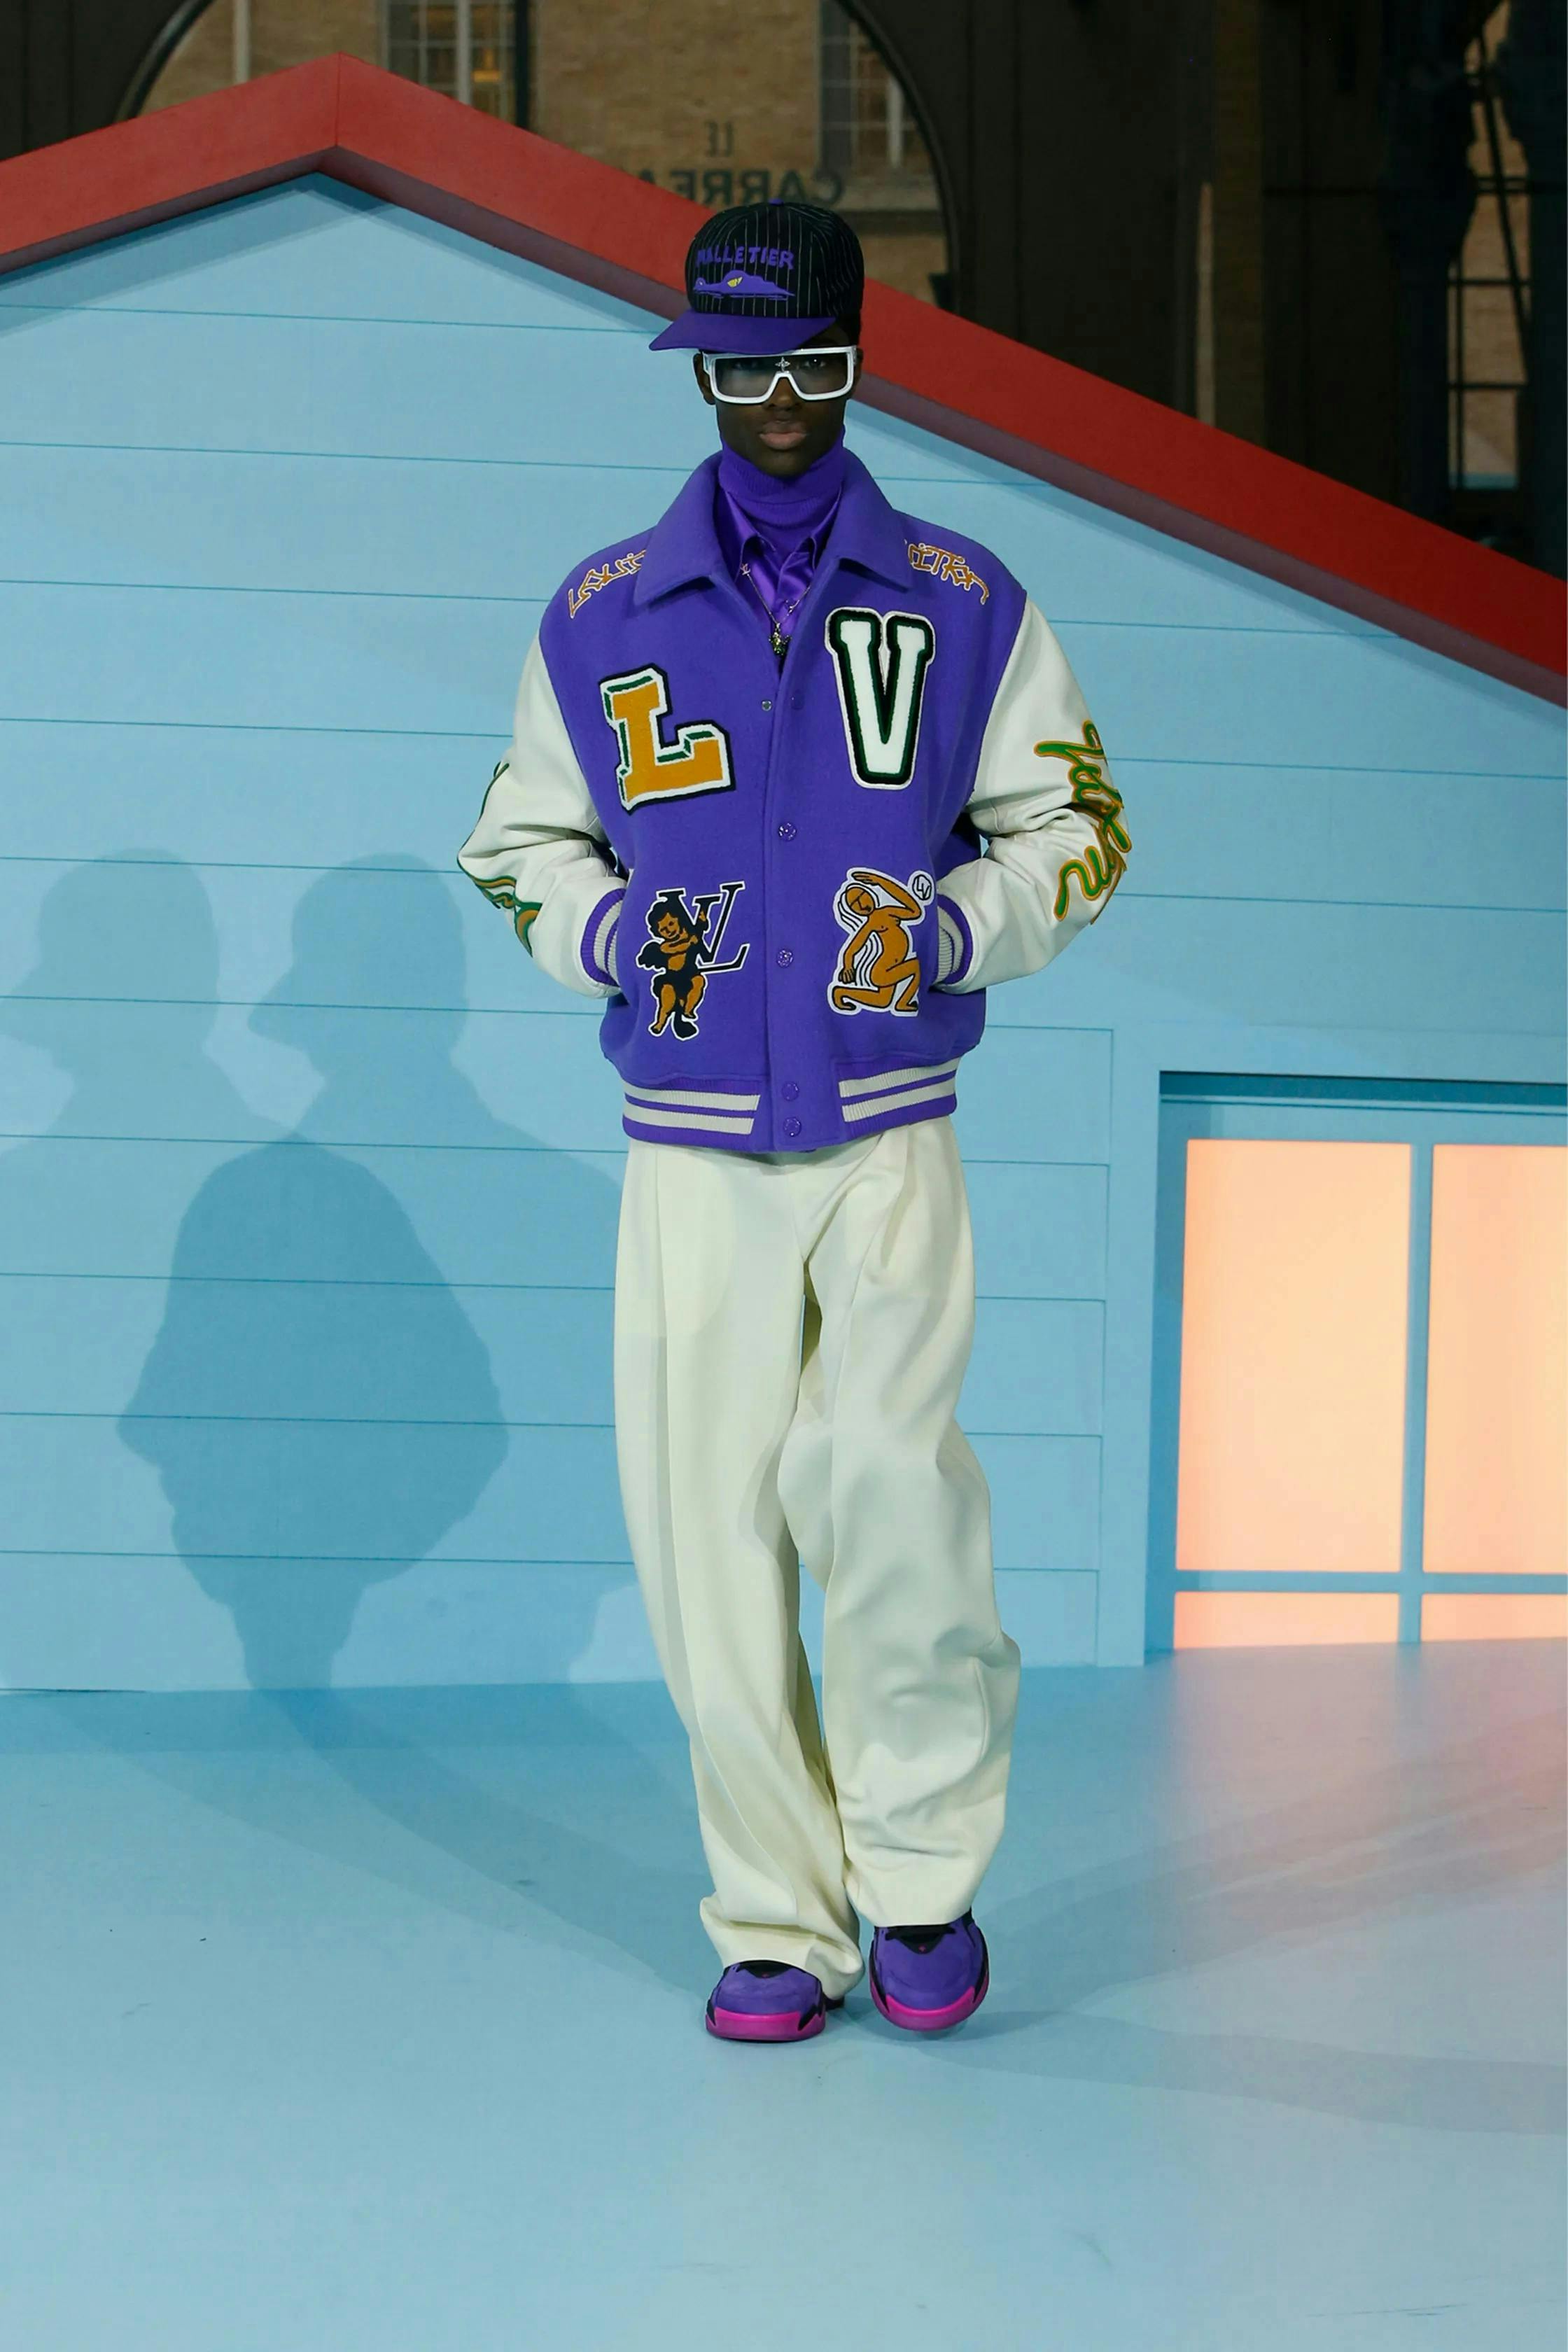 Louis Vuitton X Virgil Abloh Varsity Jacket - RockStar Jacket